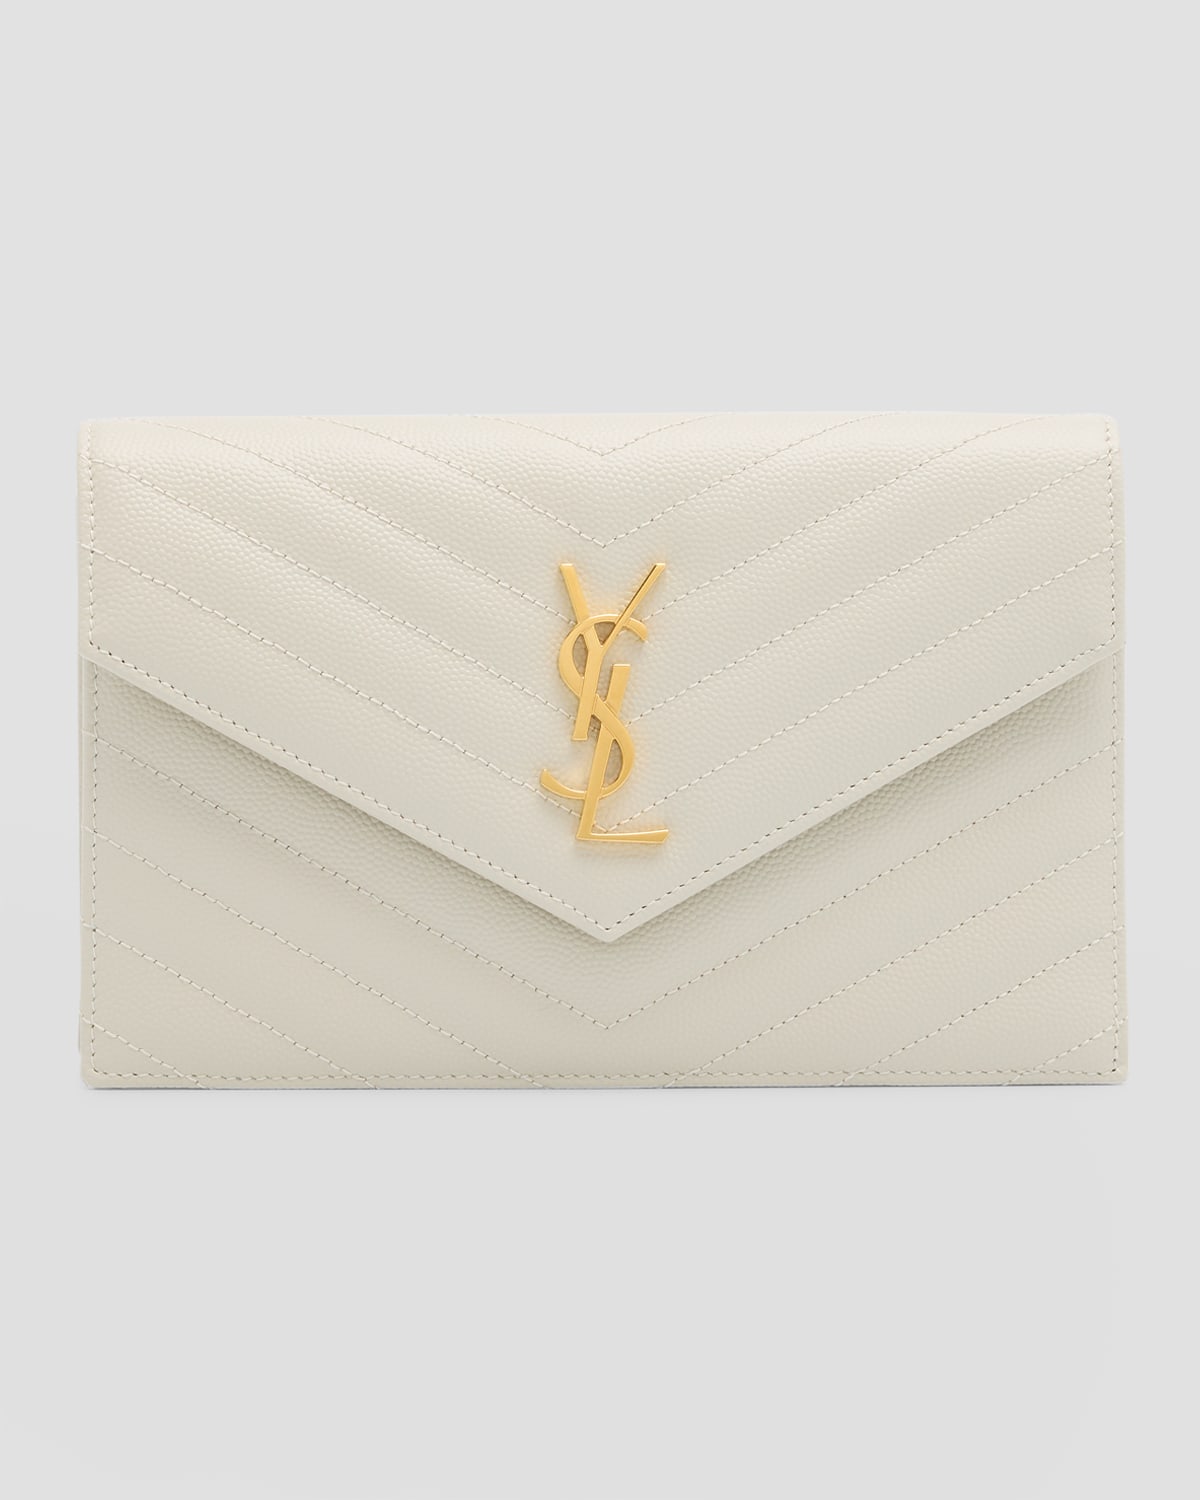 Saint Laurent Women's Ysl Envelope Flap Wallet on Chain